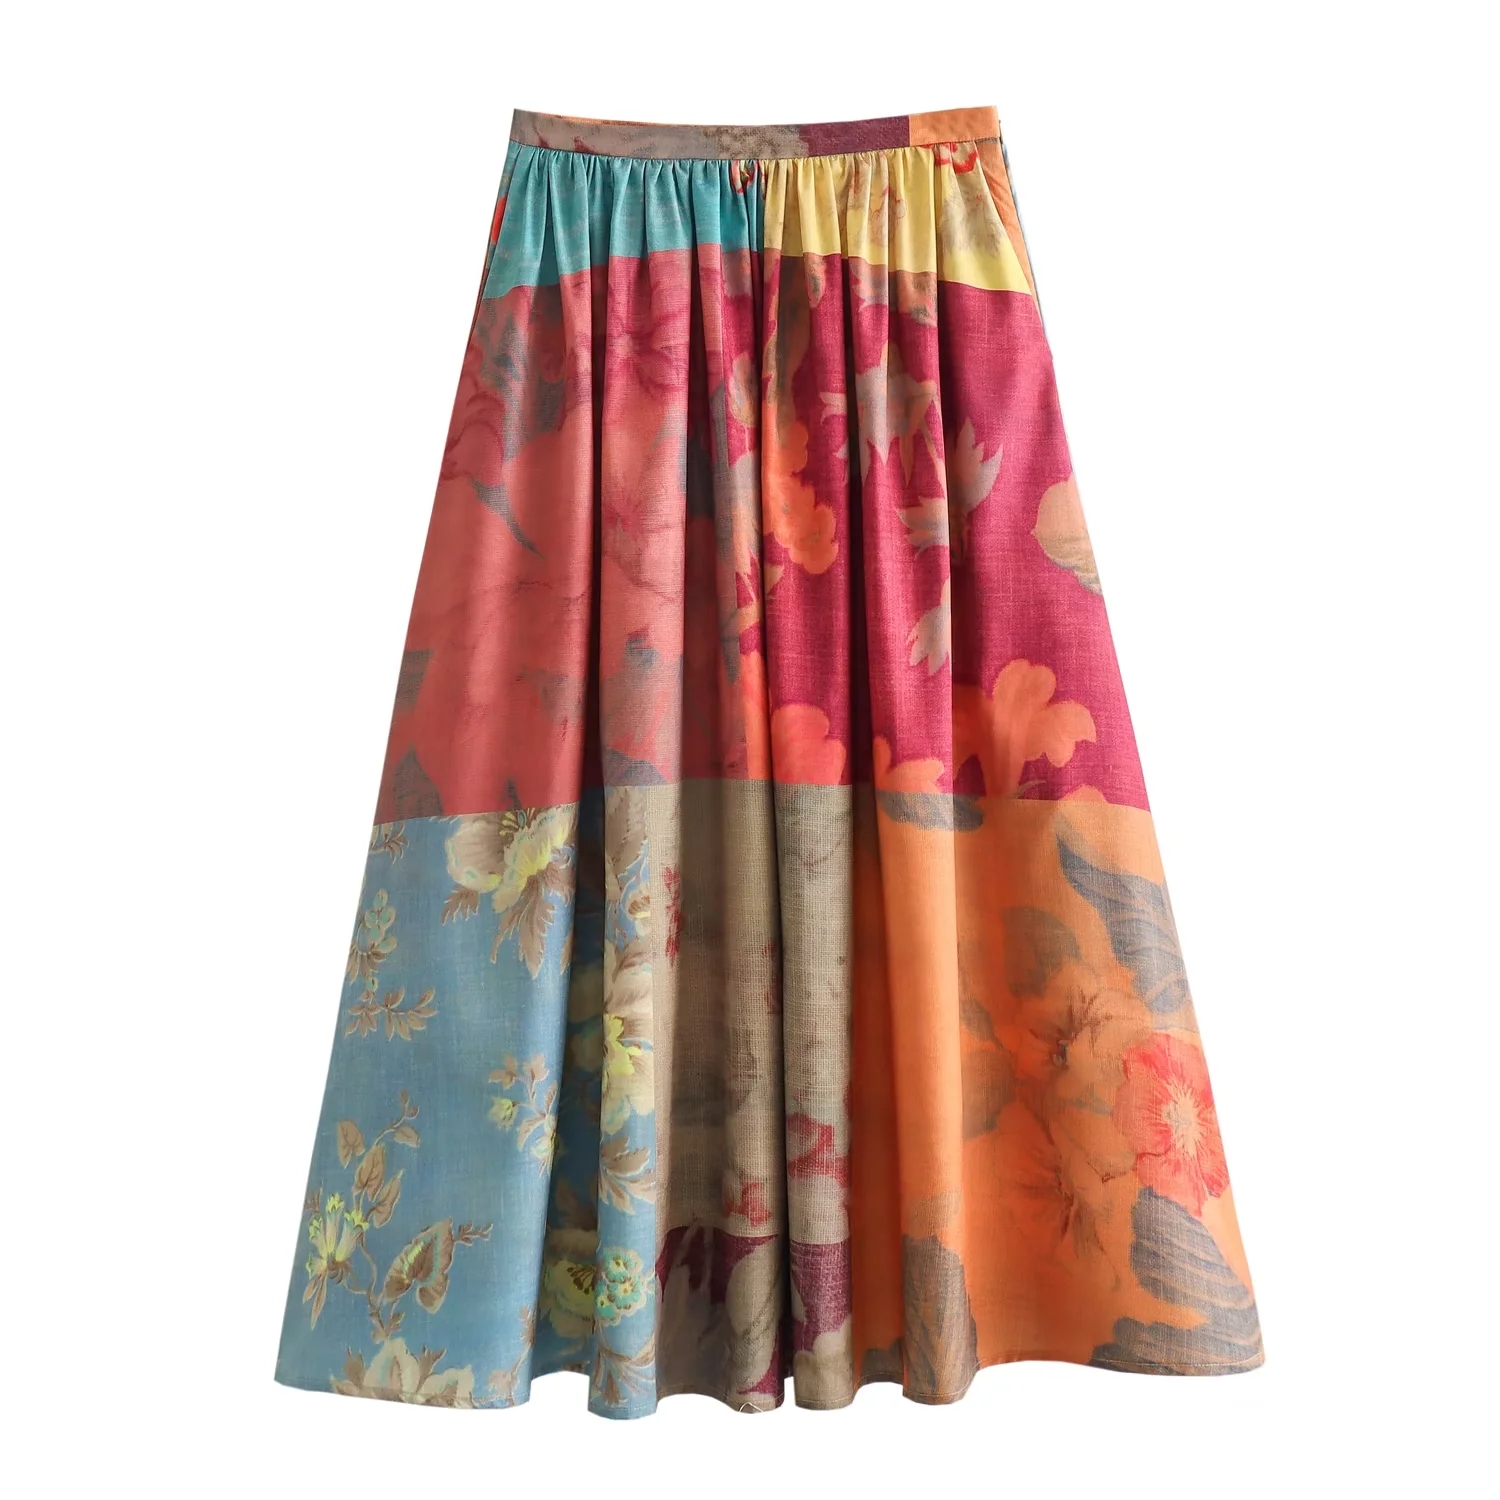 Fashion Printing Polyester Printed Skirt,Skirts